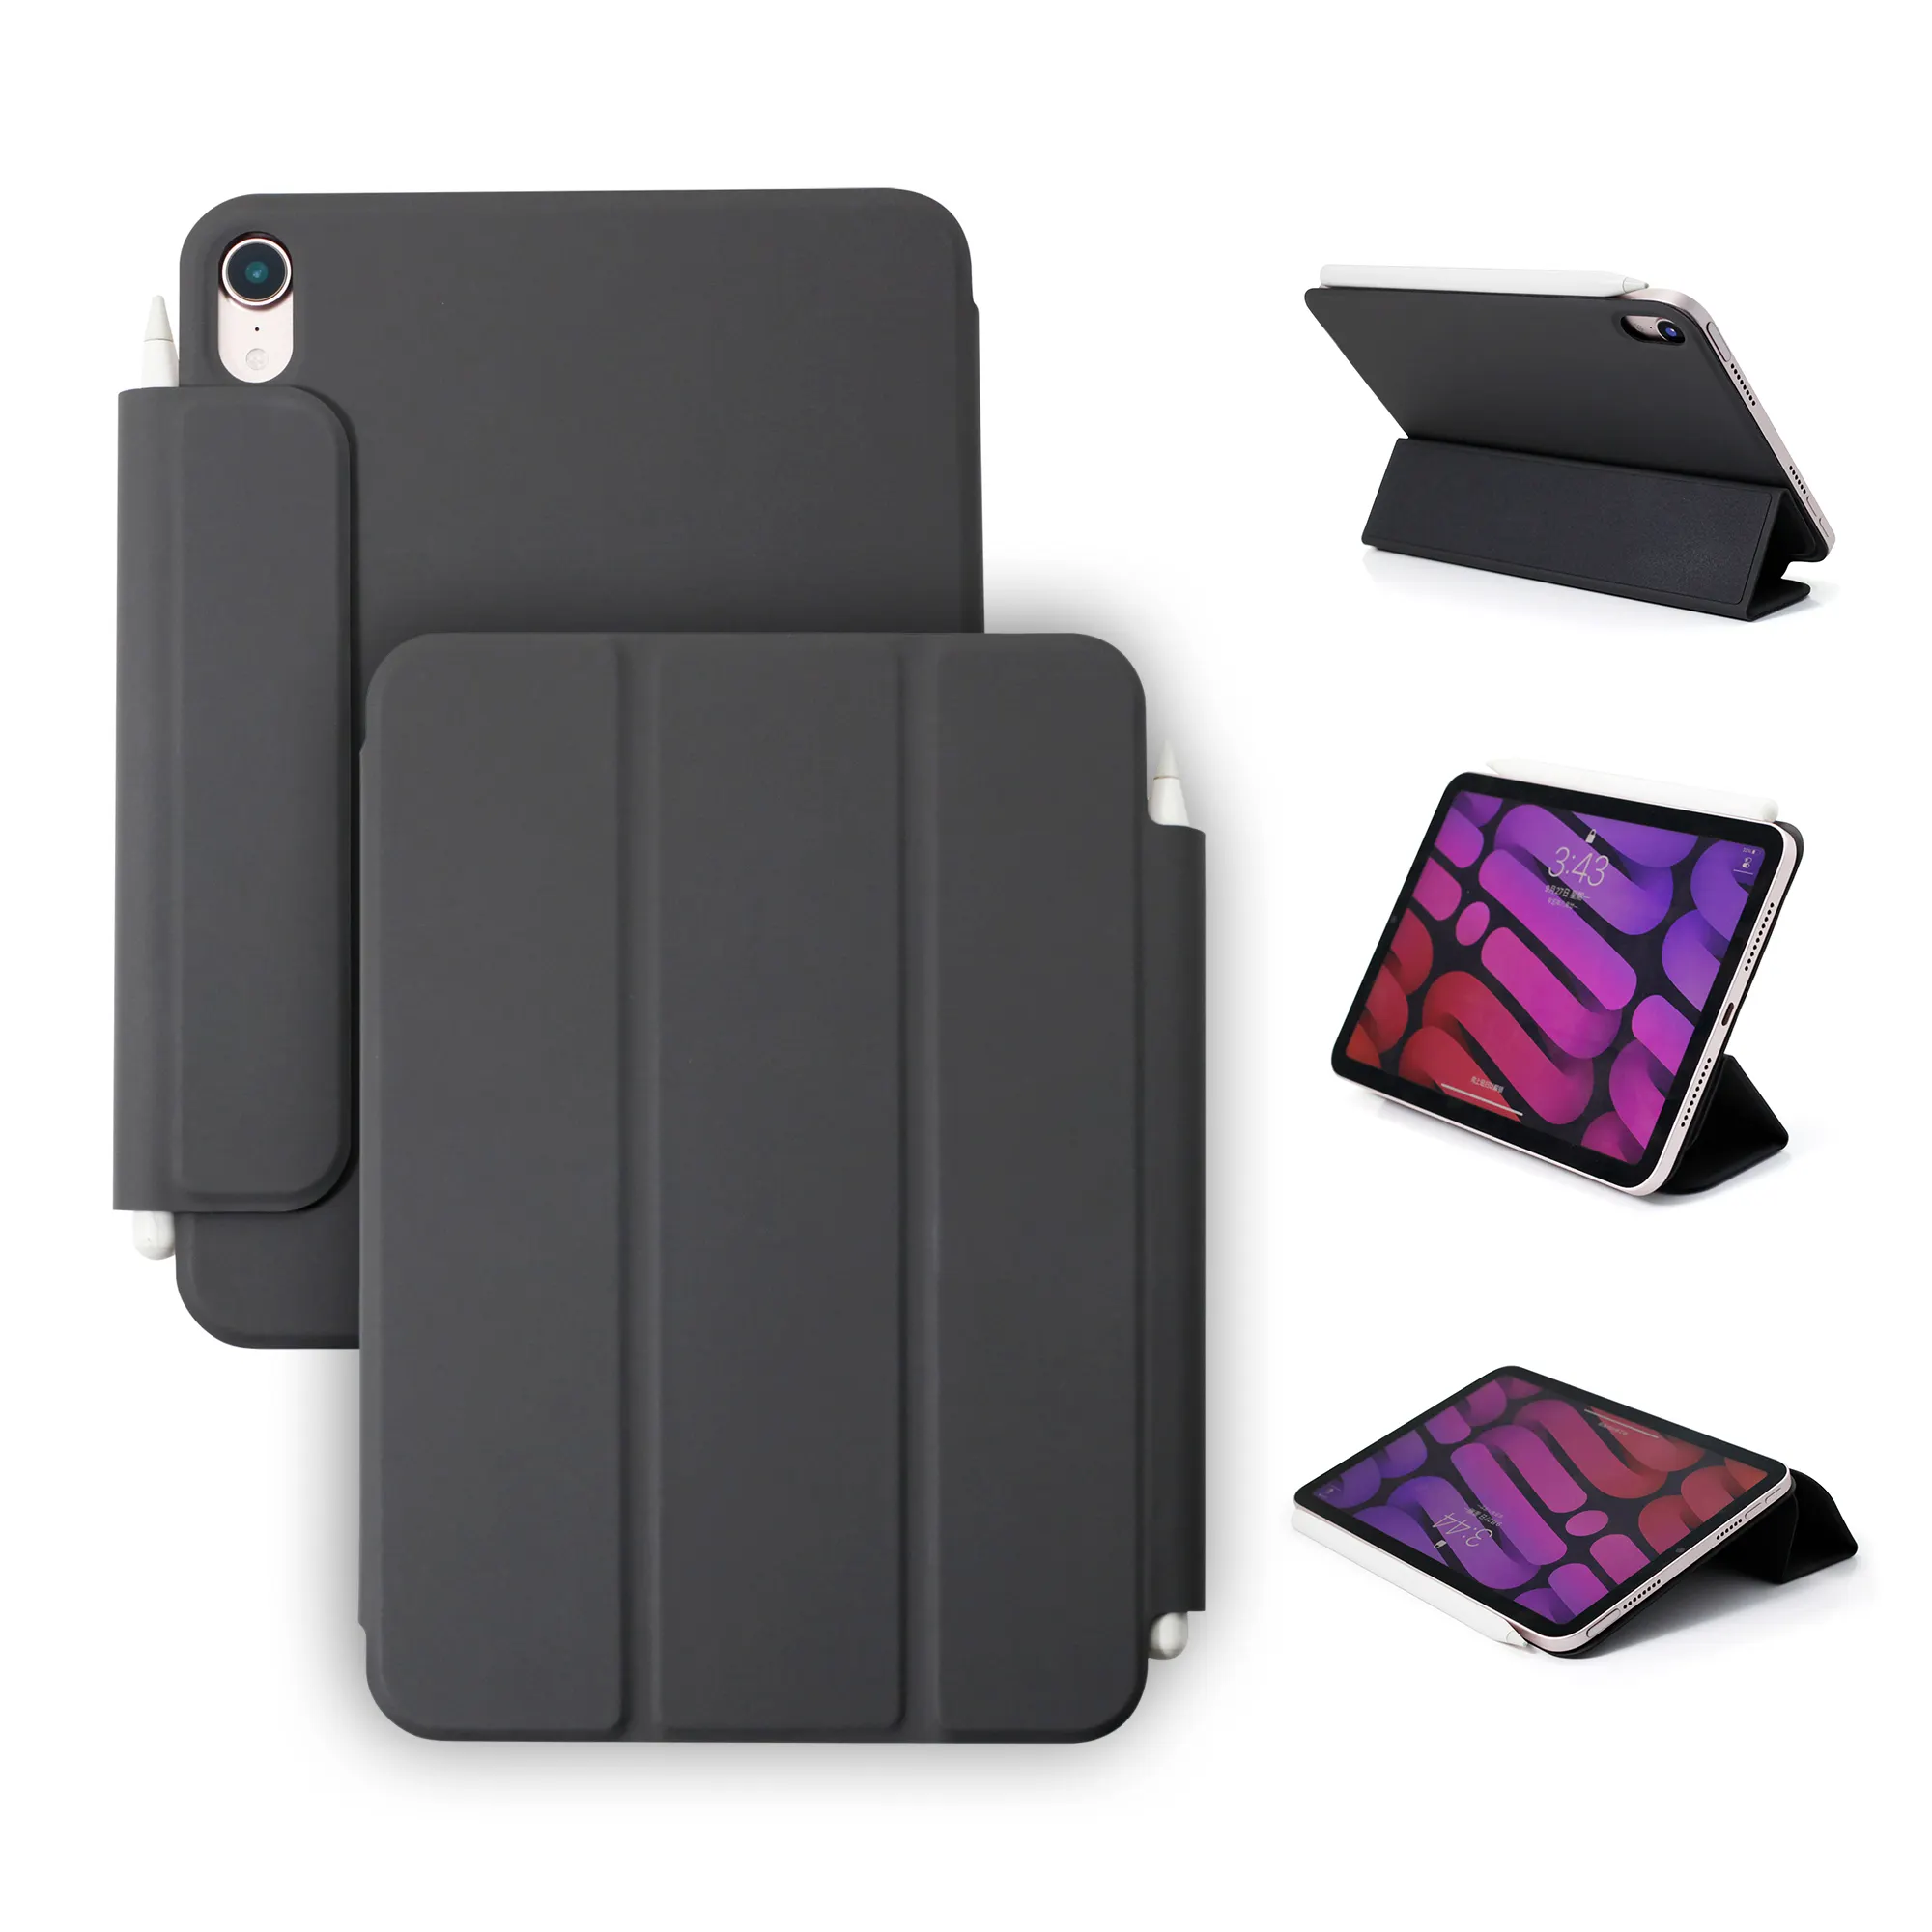 Maatwerk Kleur Officiële Stijl Tablet Cover Pu Leather Case Voor Ipad Smart Cover Voor Ipad Mini 6th Case